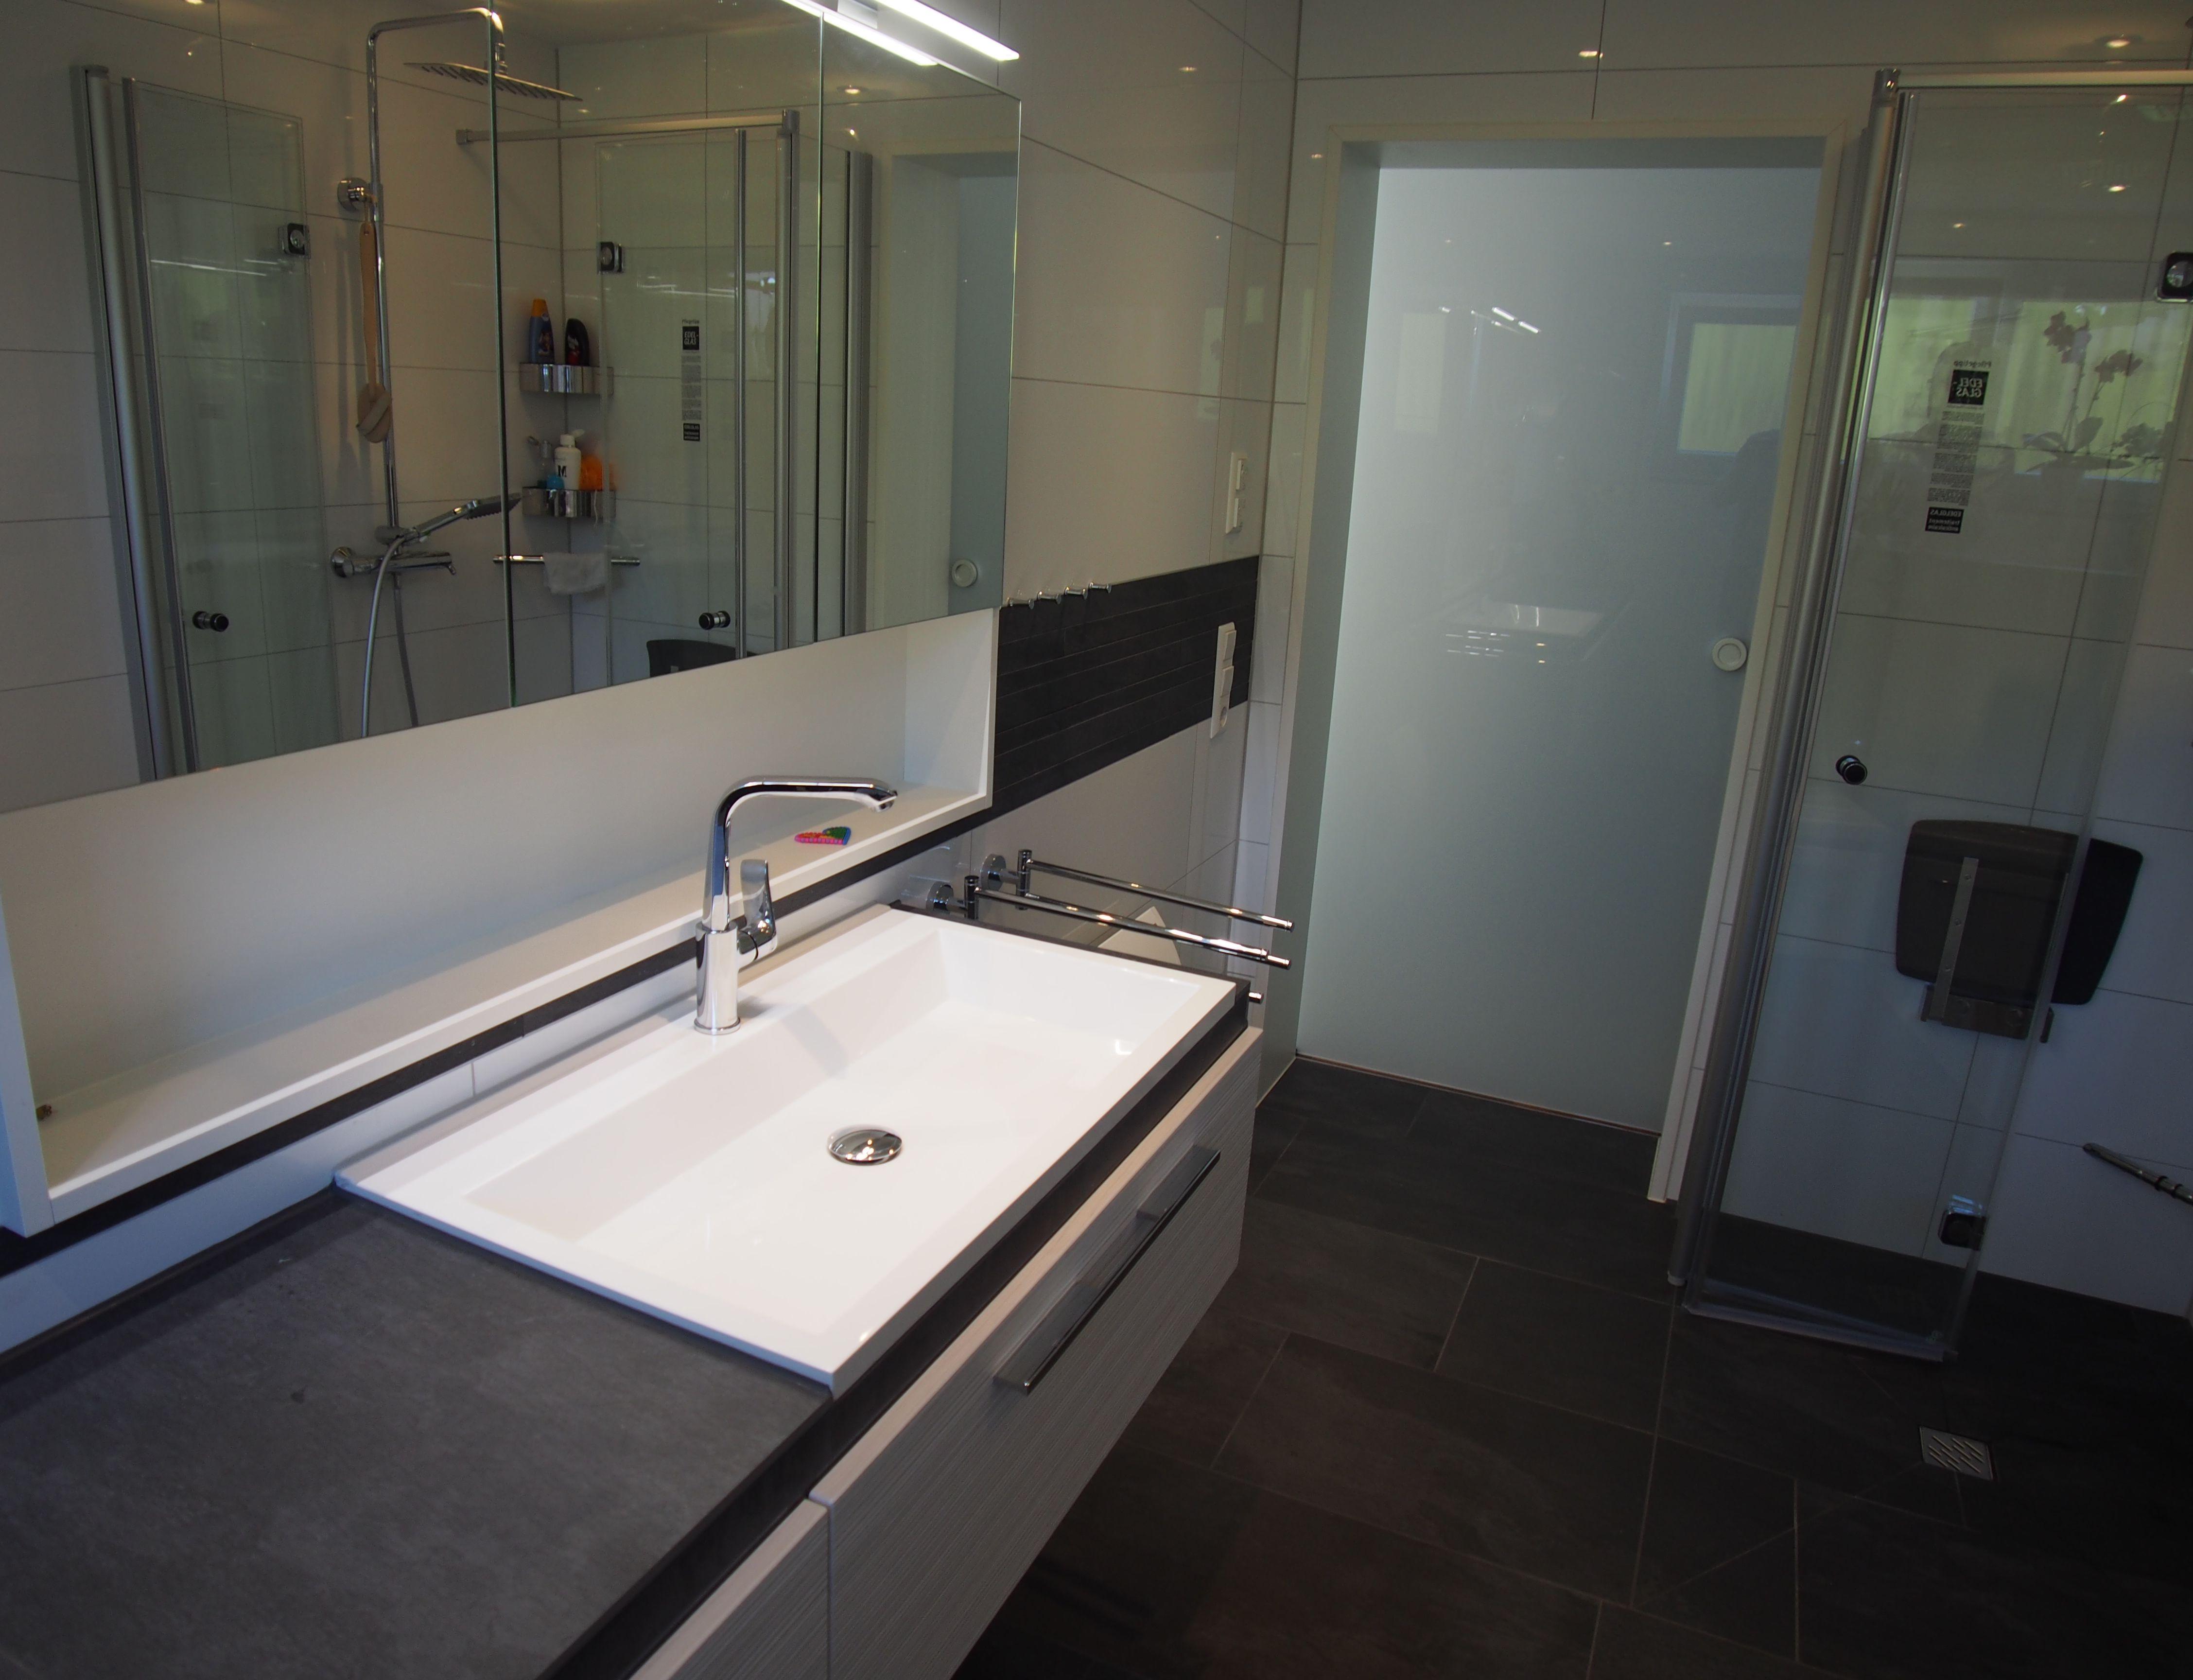 Funktionaler Waschtisch #bad #badezimmer ©HEIMWOHL GmbH